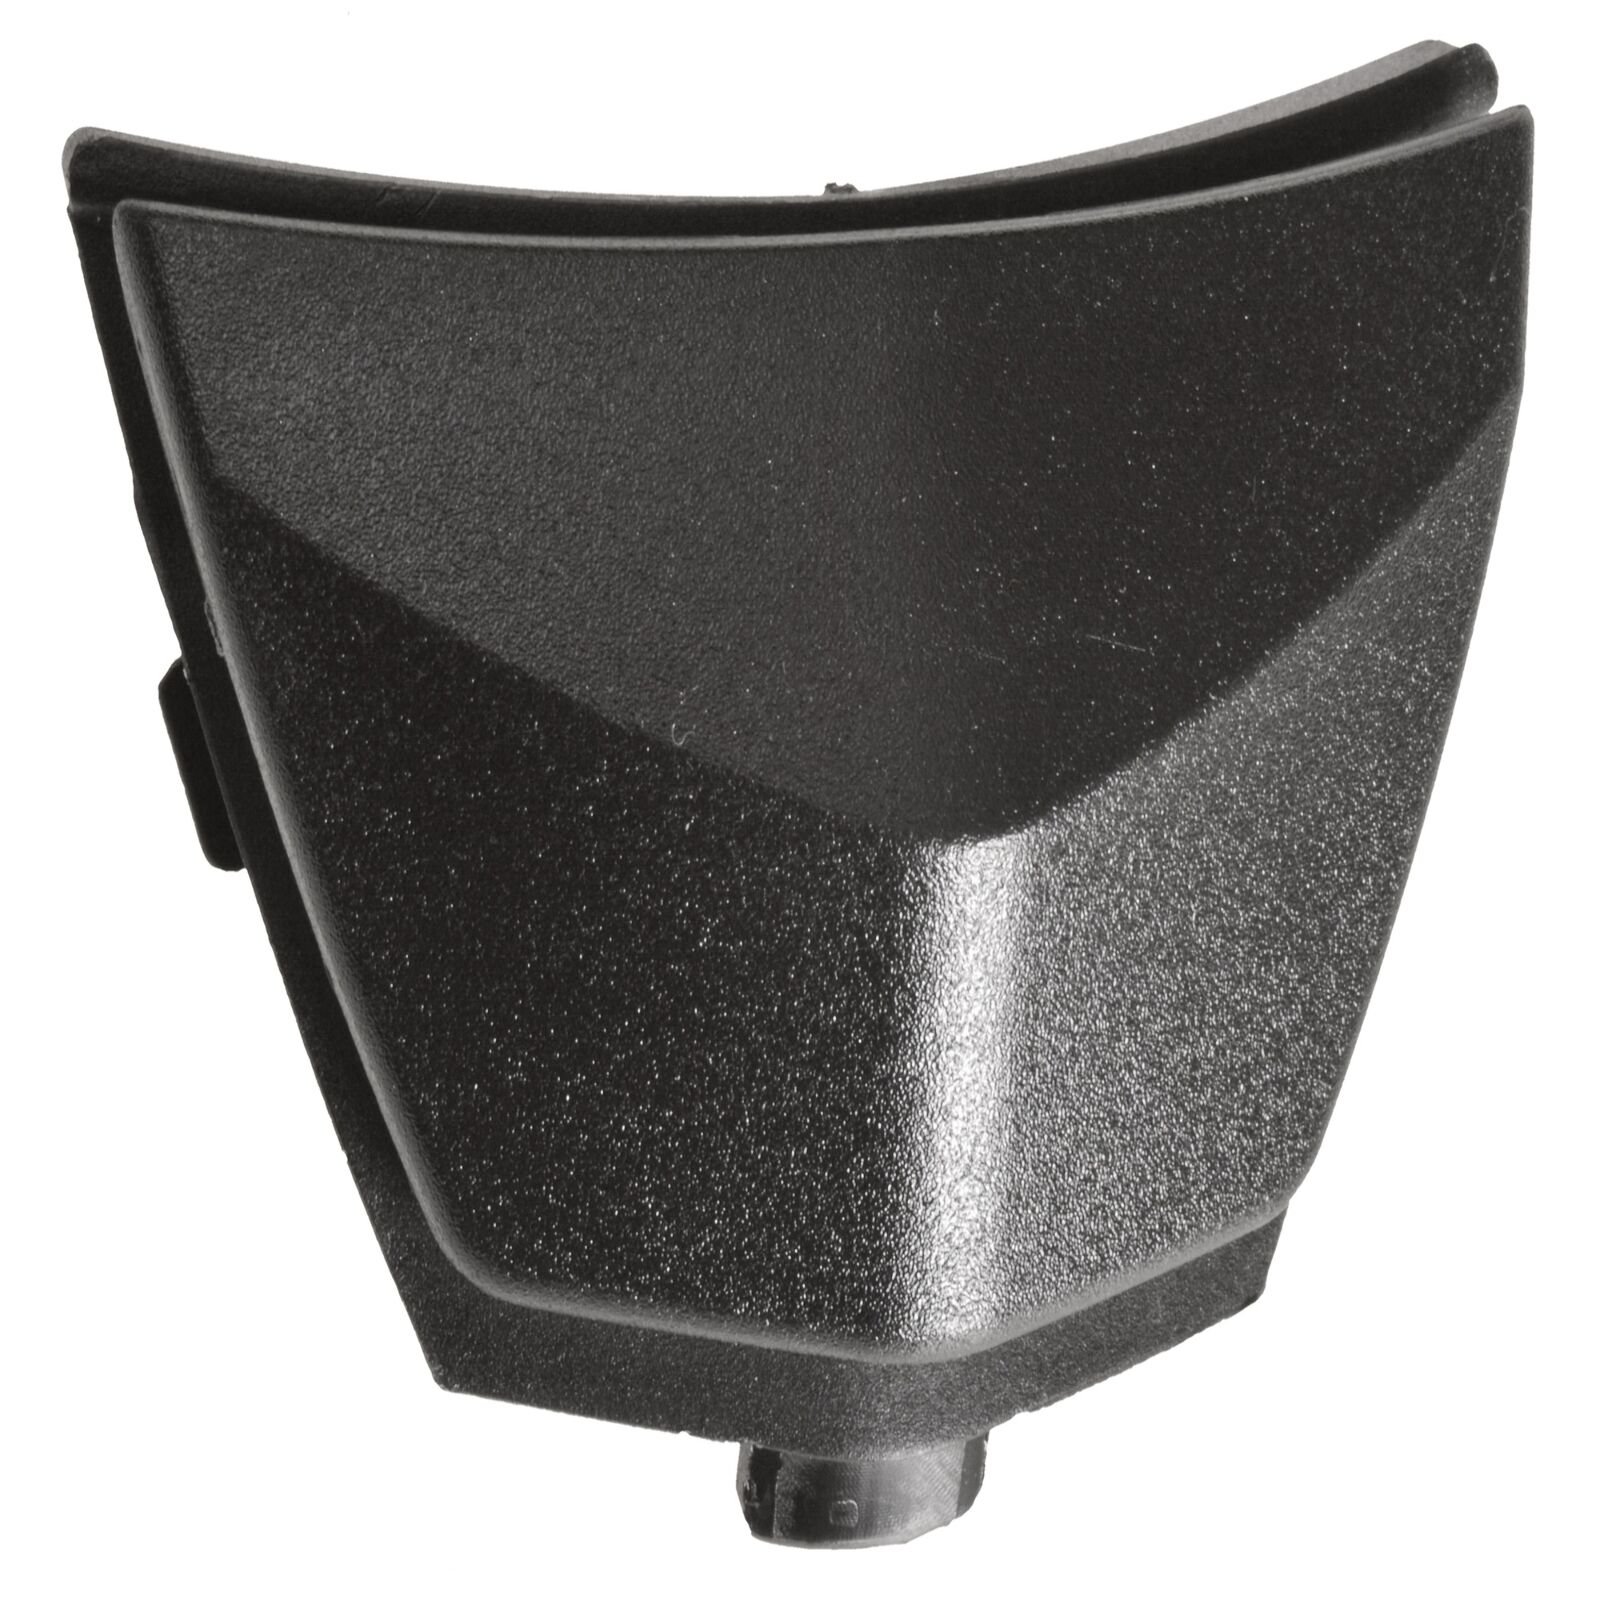 Obrázek produktu bradový kryt ventilace pro přilby RIDES, AIROH (černý) 6549